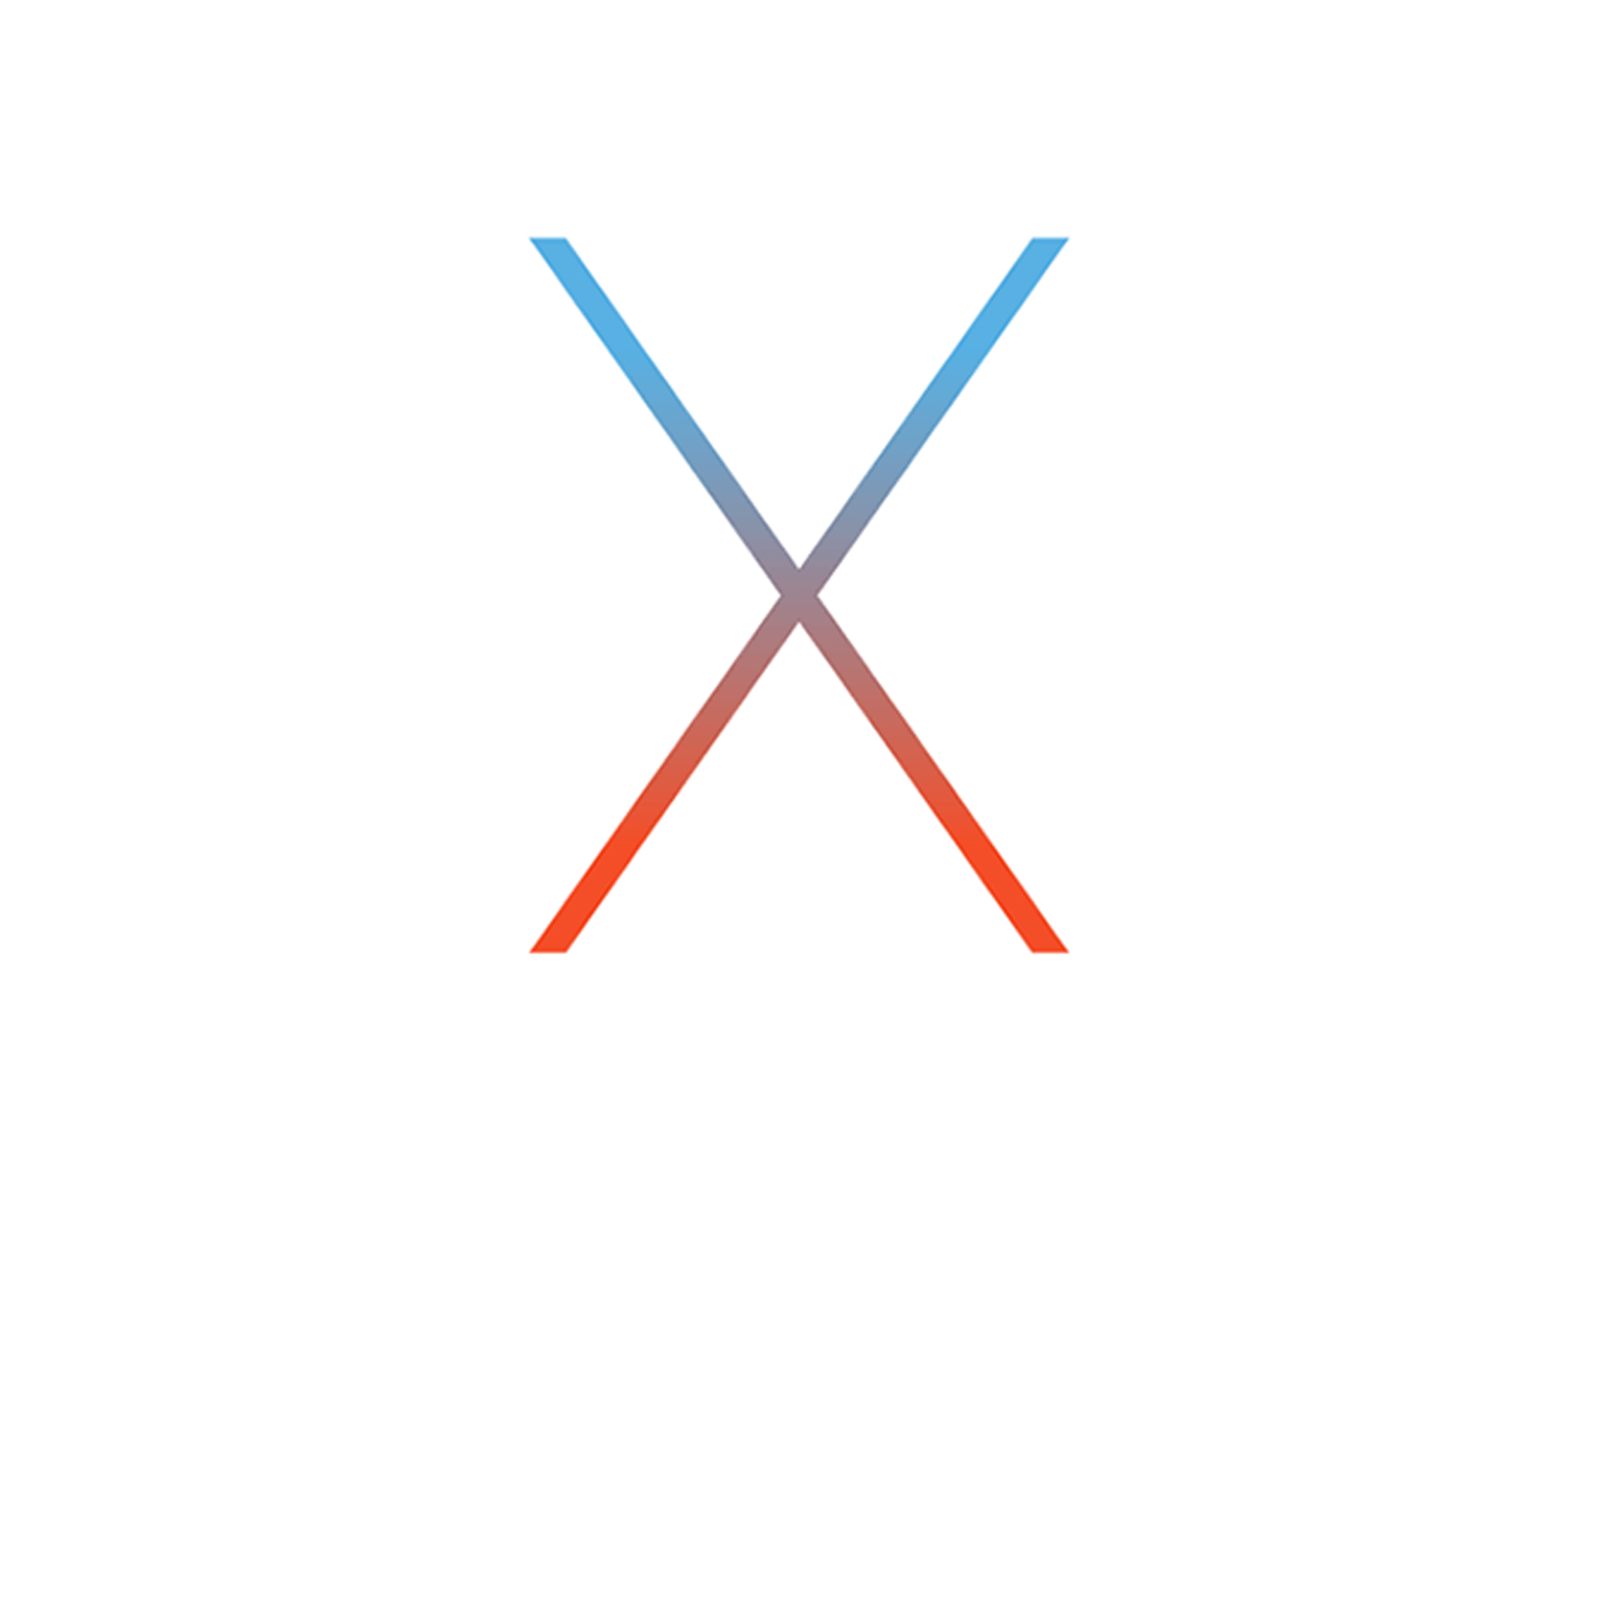 OS X El Capitan help